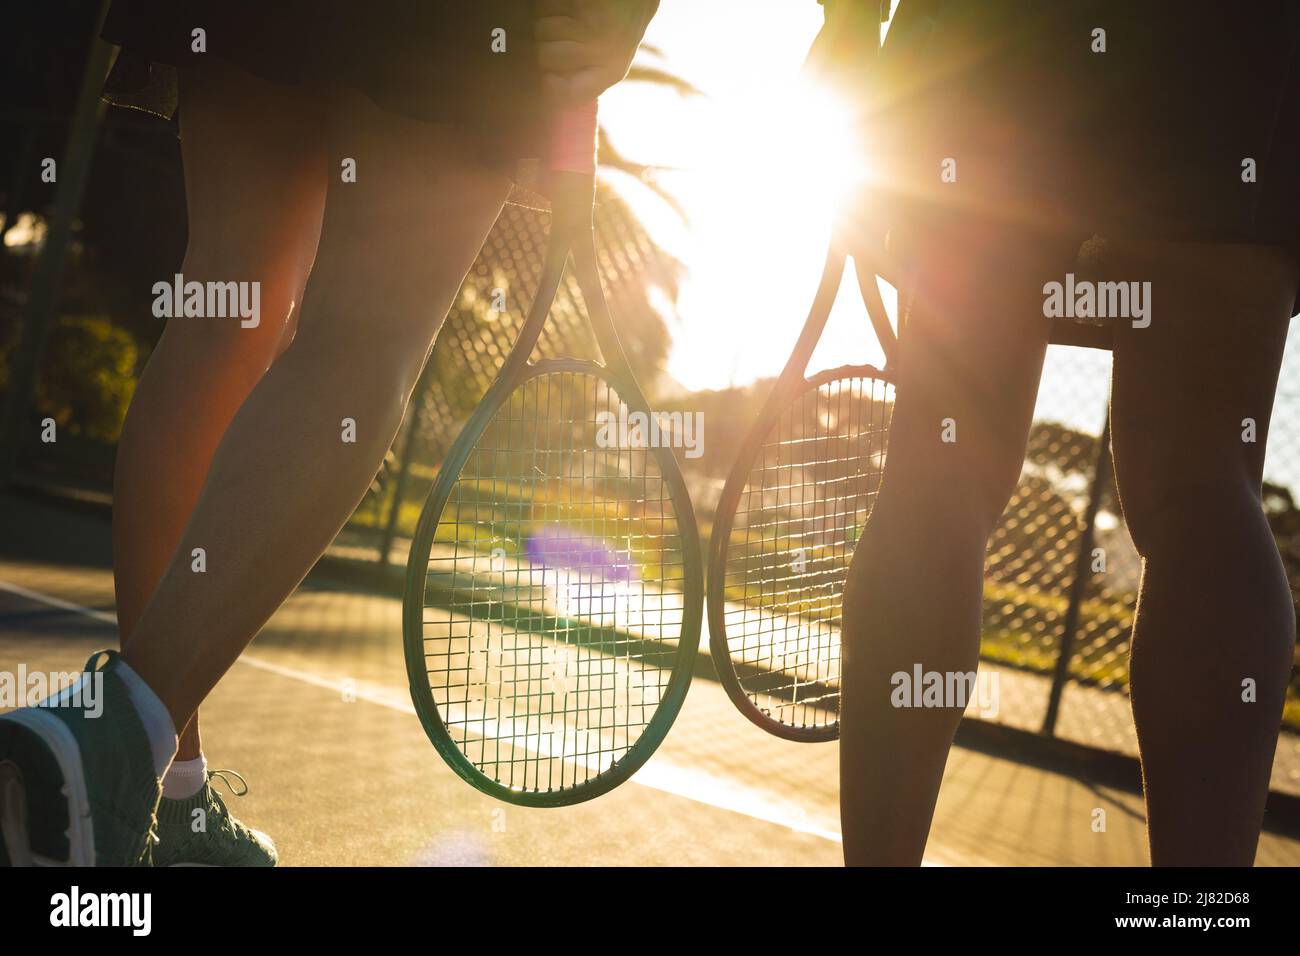 Jeunes filles de tennis multiracial éclairées marchant avec des raquettes sur le court Banque D'Images